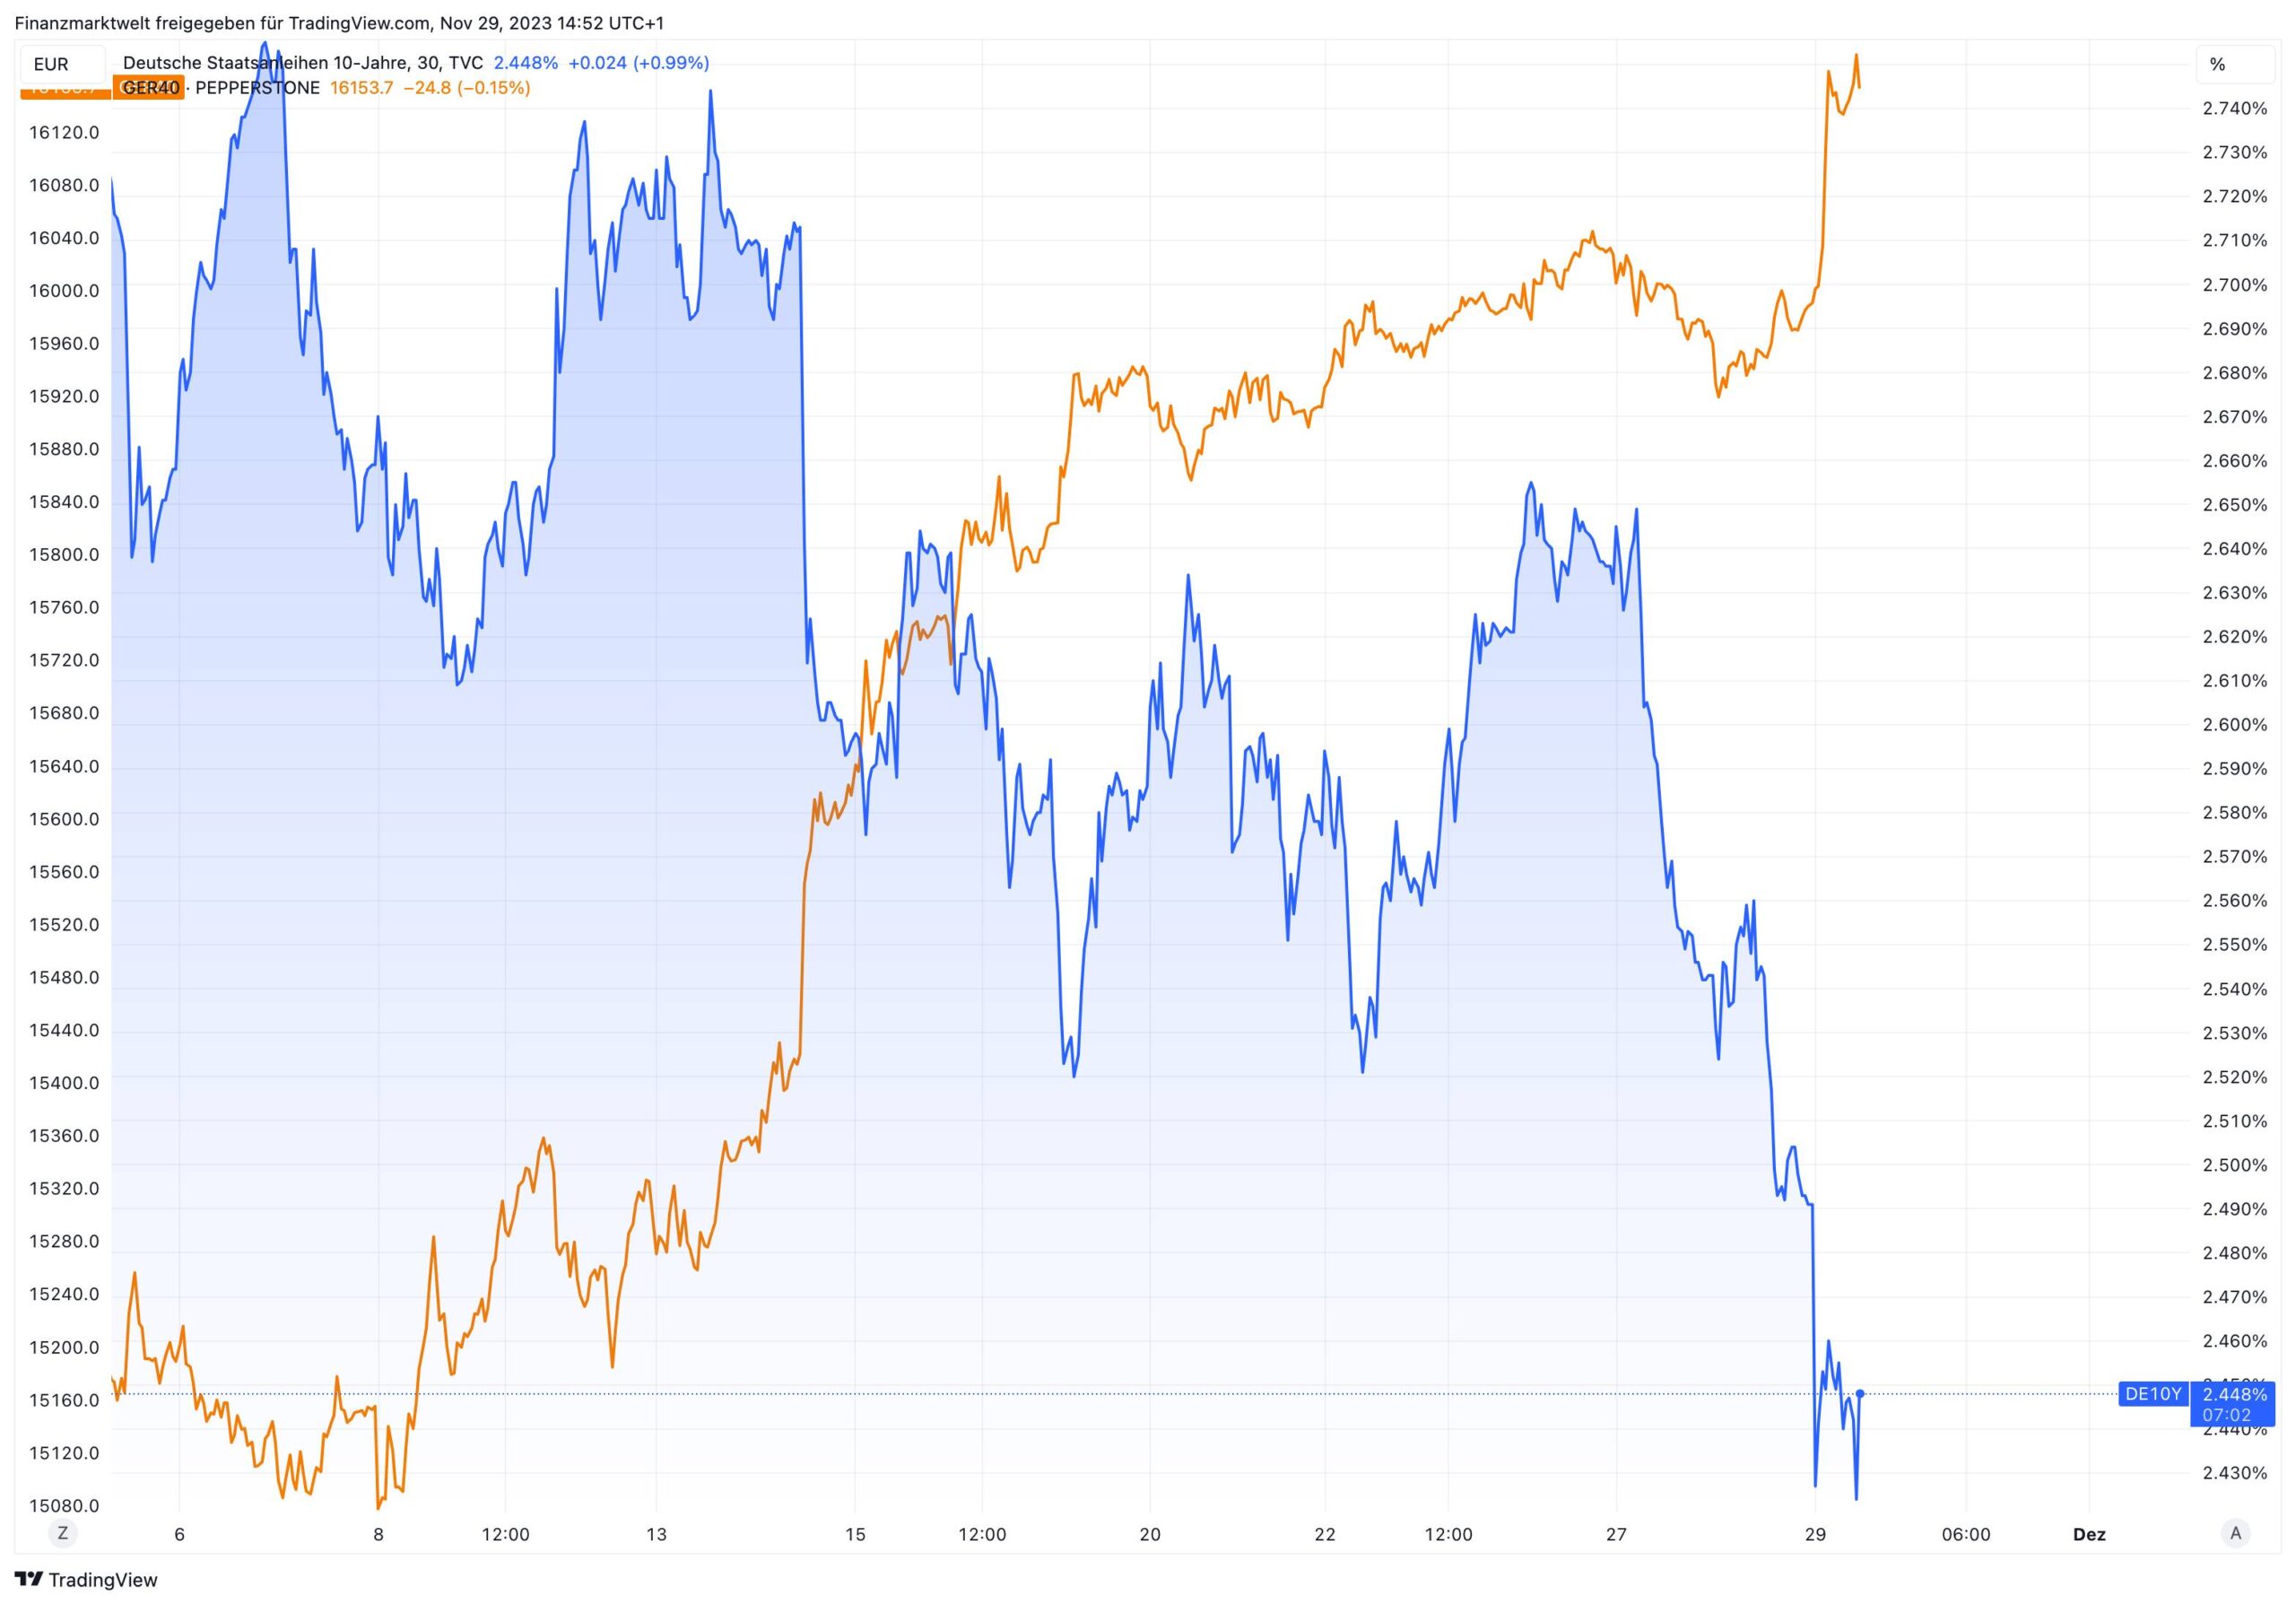 Vergleich von Dax und deutschen Anleiherenditen seit dem 3. November